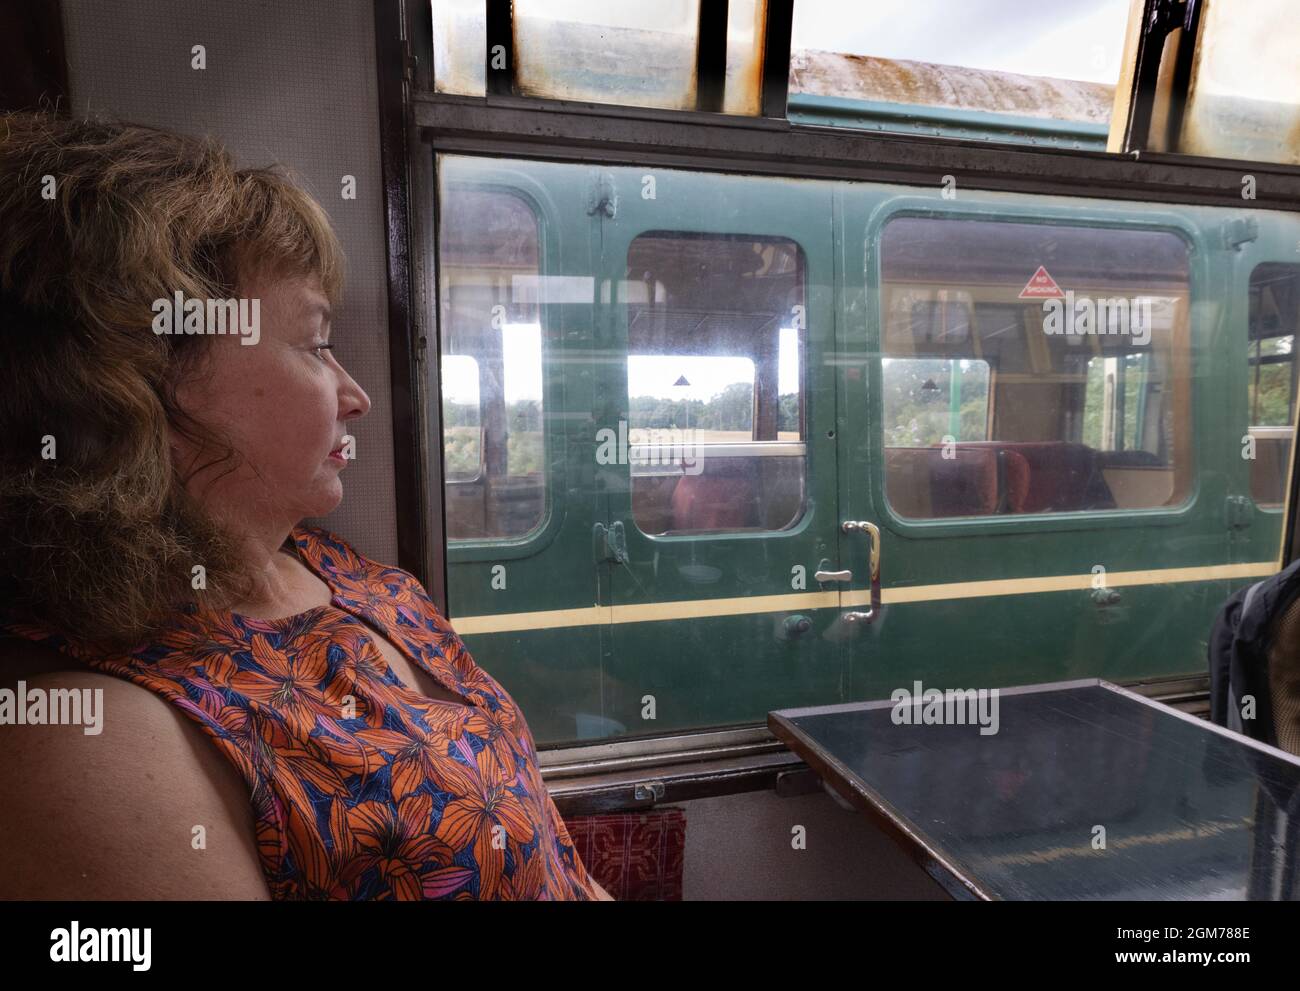 Viaggio in treno a vapore - una donna che viaggia in una carrozza vintage, Regno Unito. Vedere anche 2GM78C9 Foto Stock